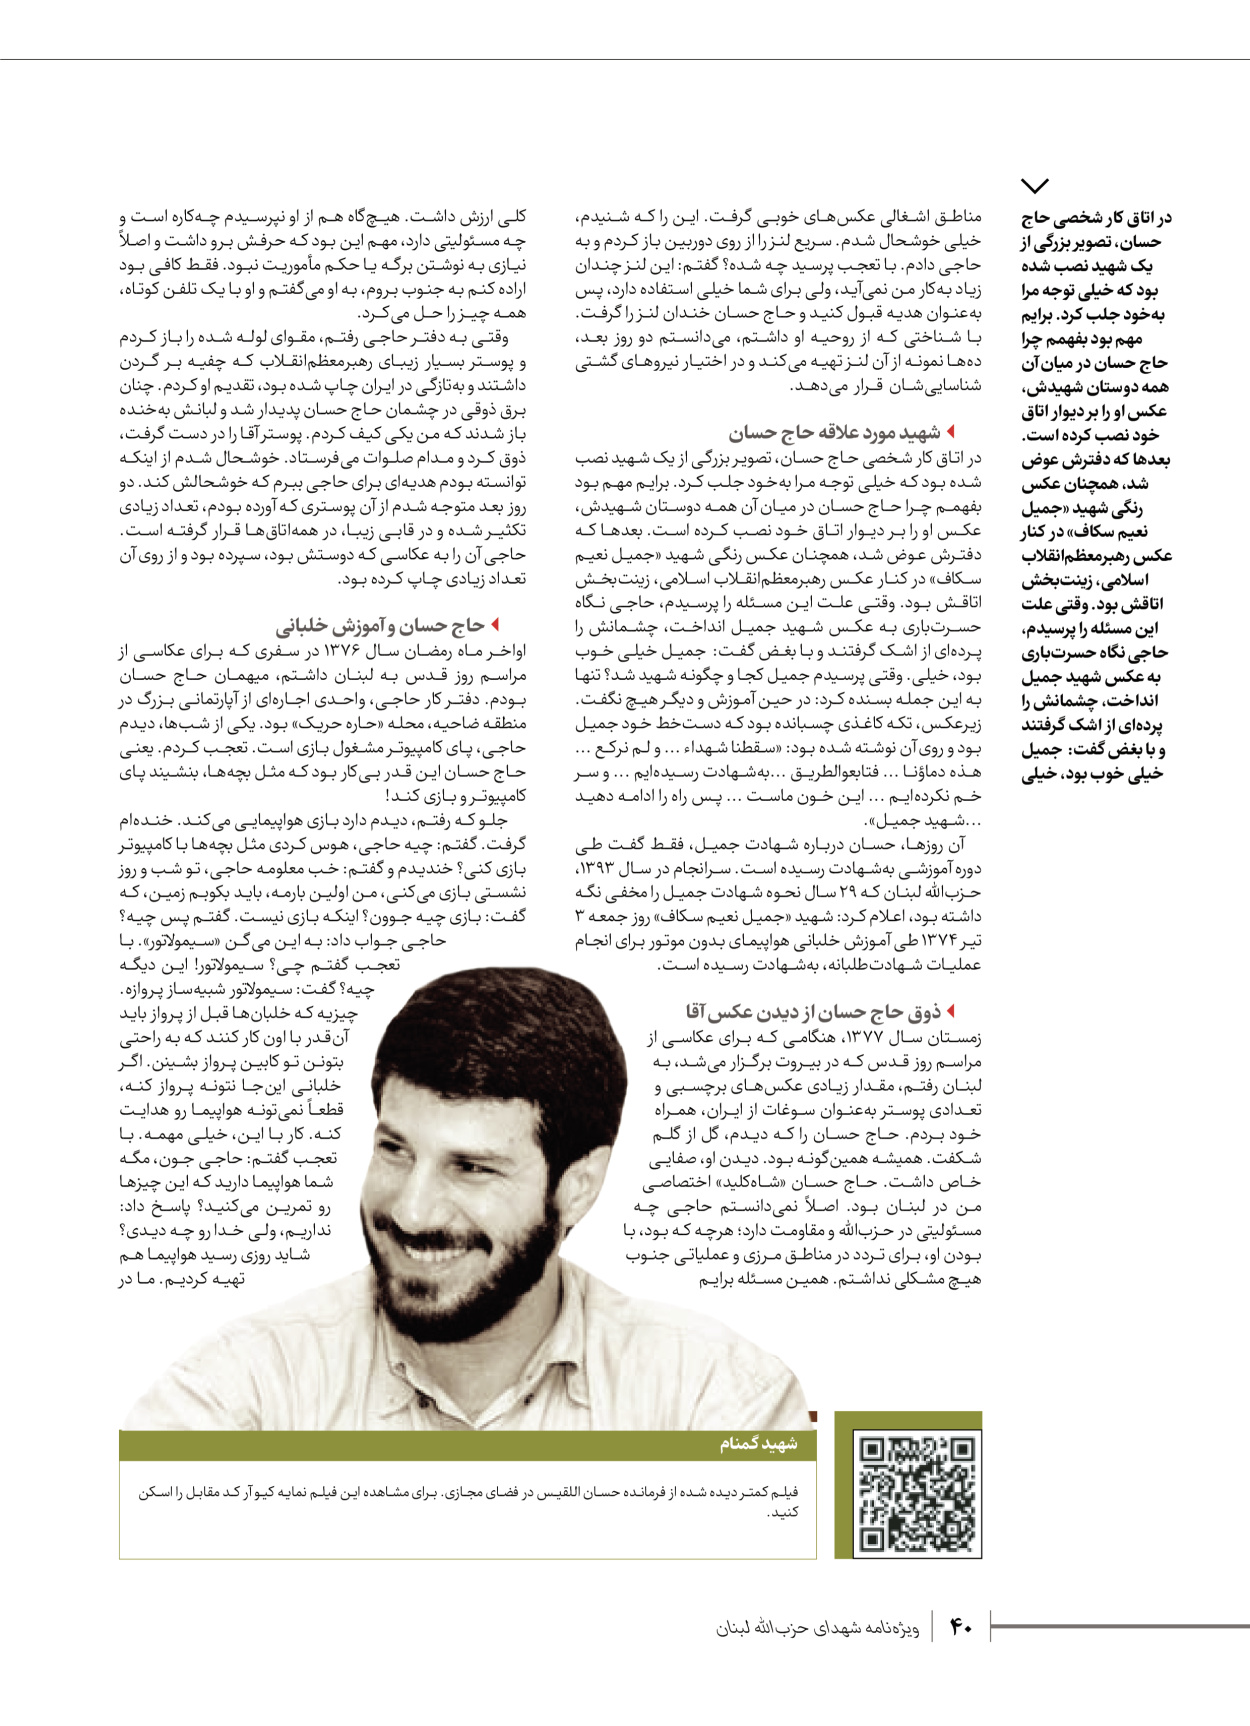 روزنامه ایران - ویژه نامه شهدای قدس ۶ - ۲۵ فروردین ۱۴۰۳ - صفحه ۴۰